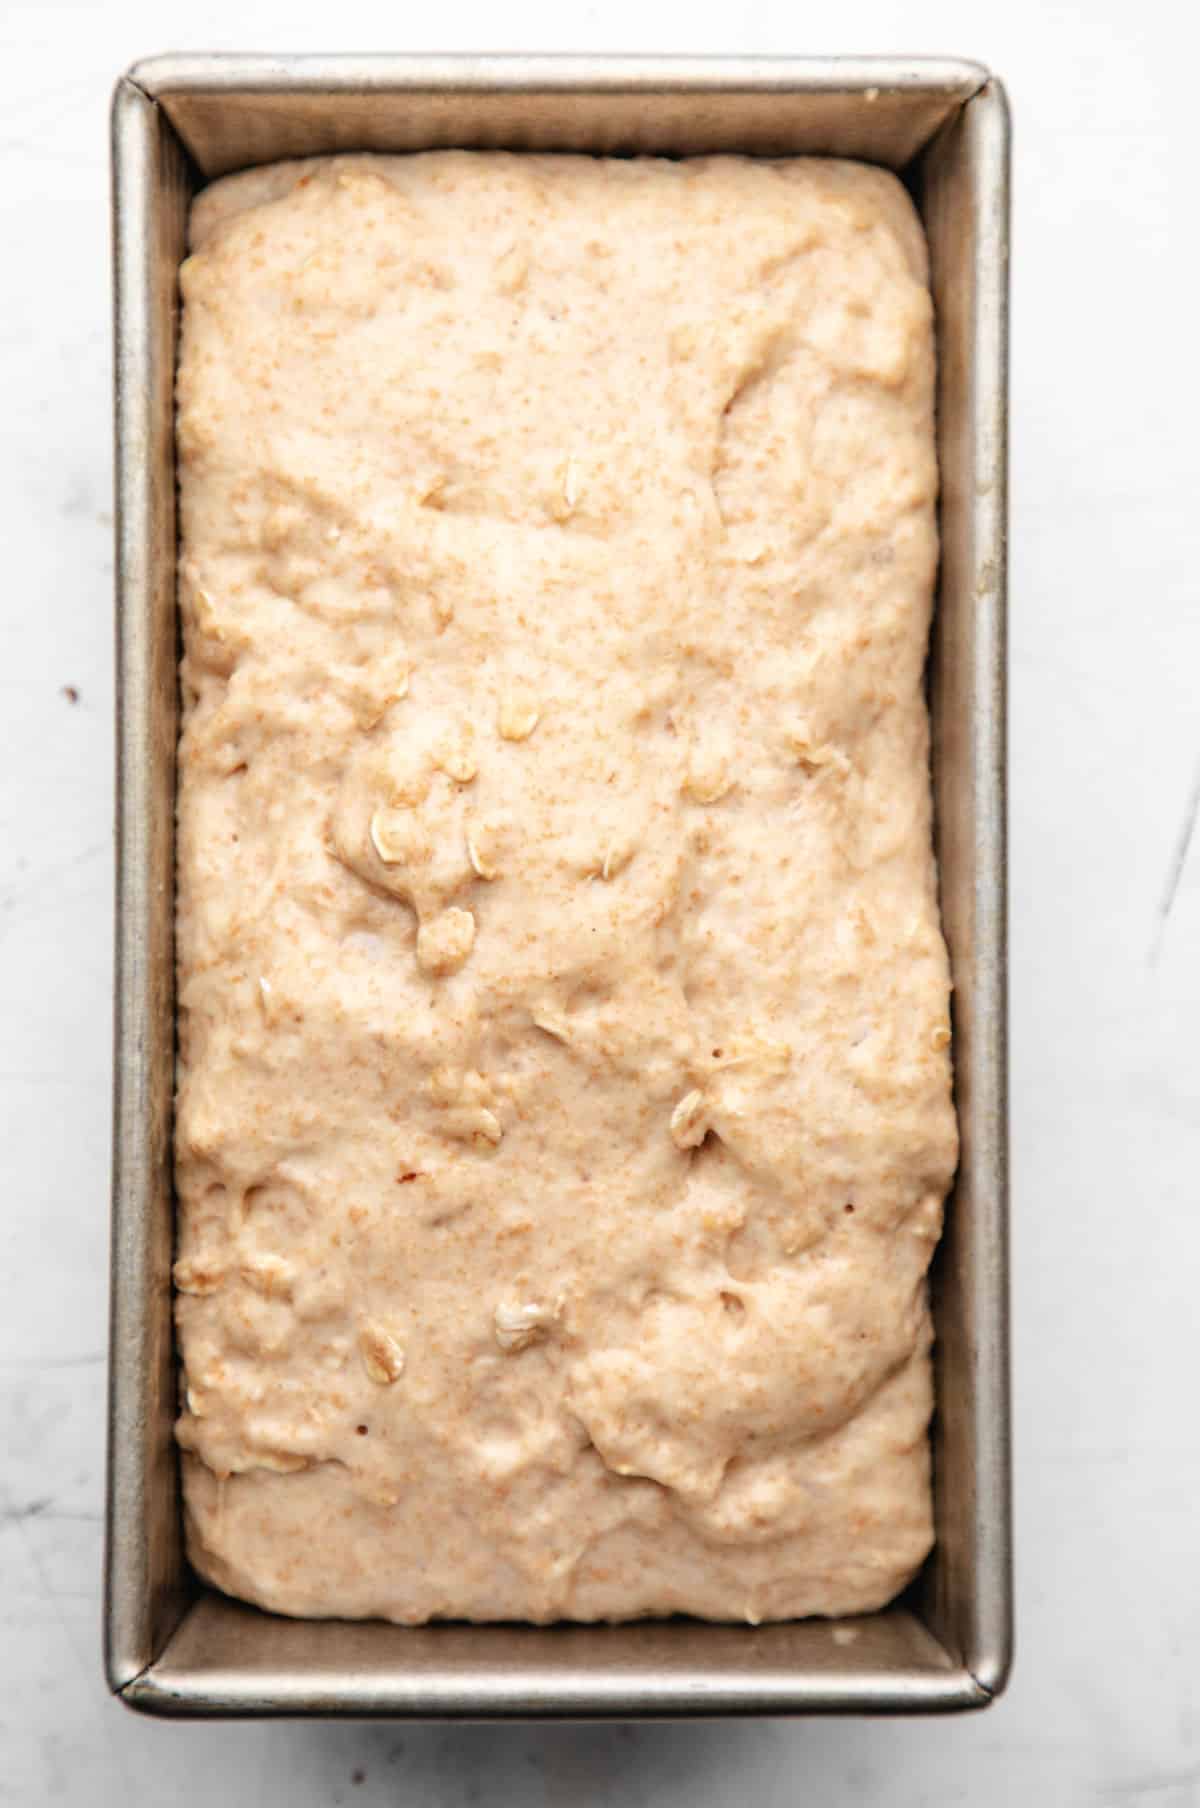 Risen honey oat bread dough in a loaf pan.